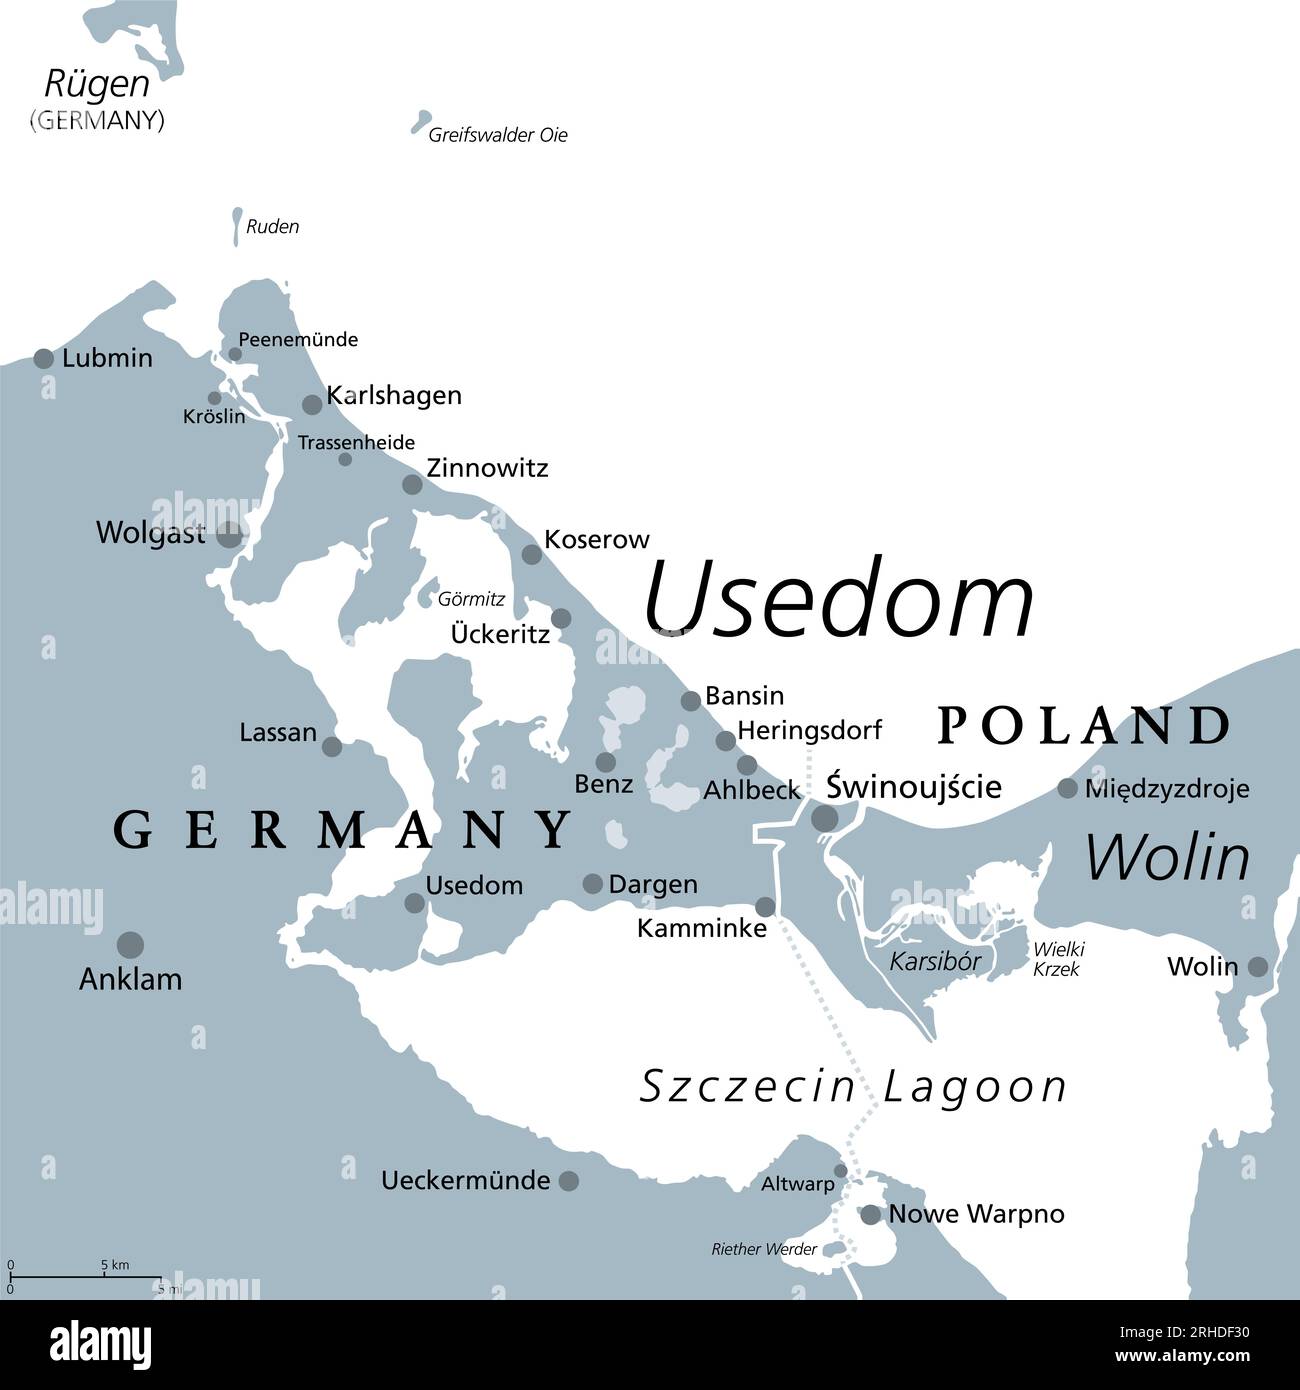 Usedom, Ostseeinsel in Pommern, graue politische Karte. Der Spitzname Sun Island, die sonnigste und bevölkerungsreichste Insel der Ostsee. Stockfoto